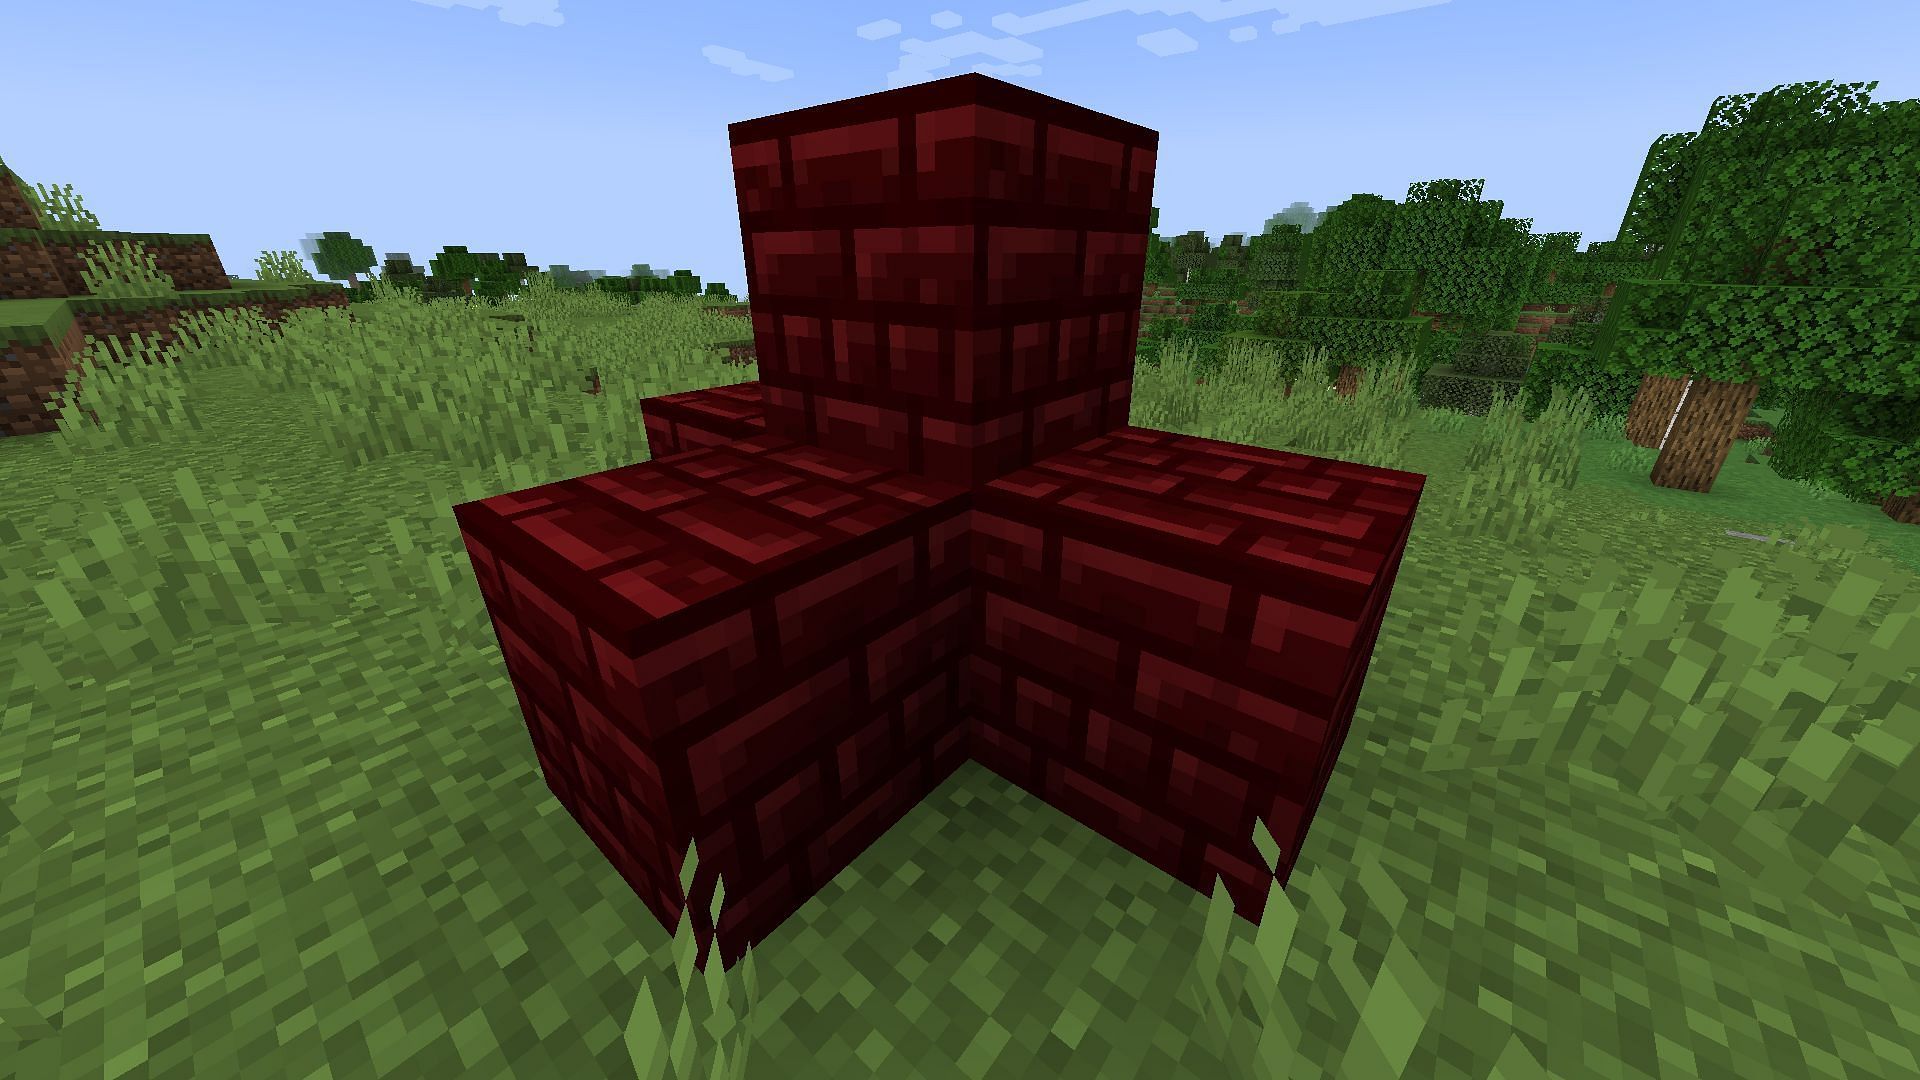 Red Nether bricks (Image via Minecraft 1.19 update)